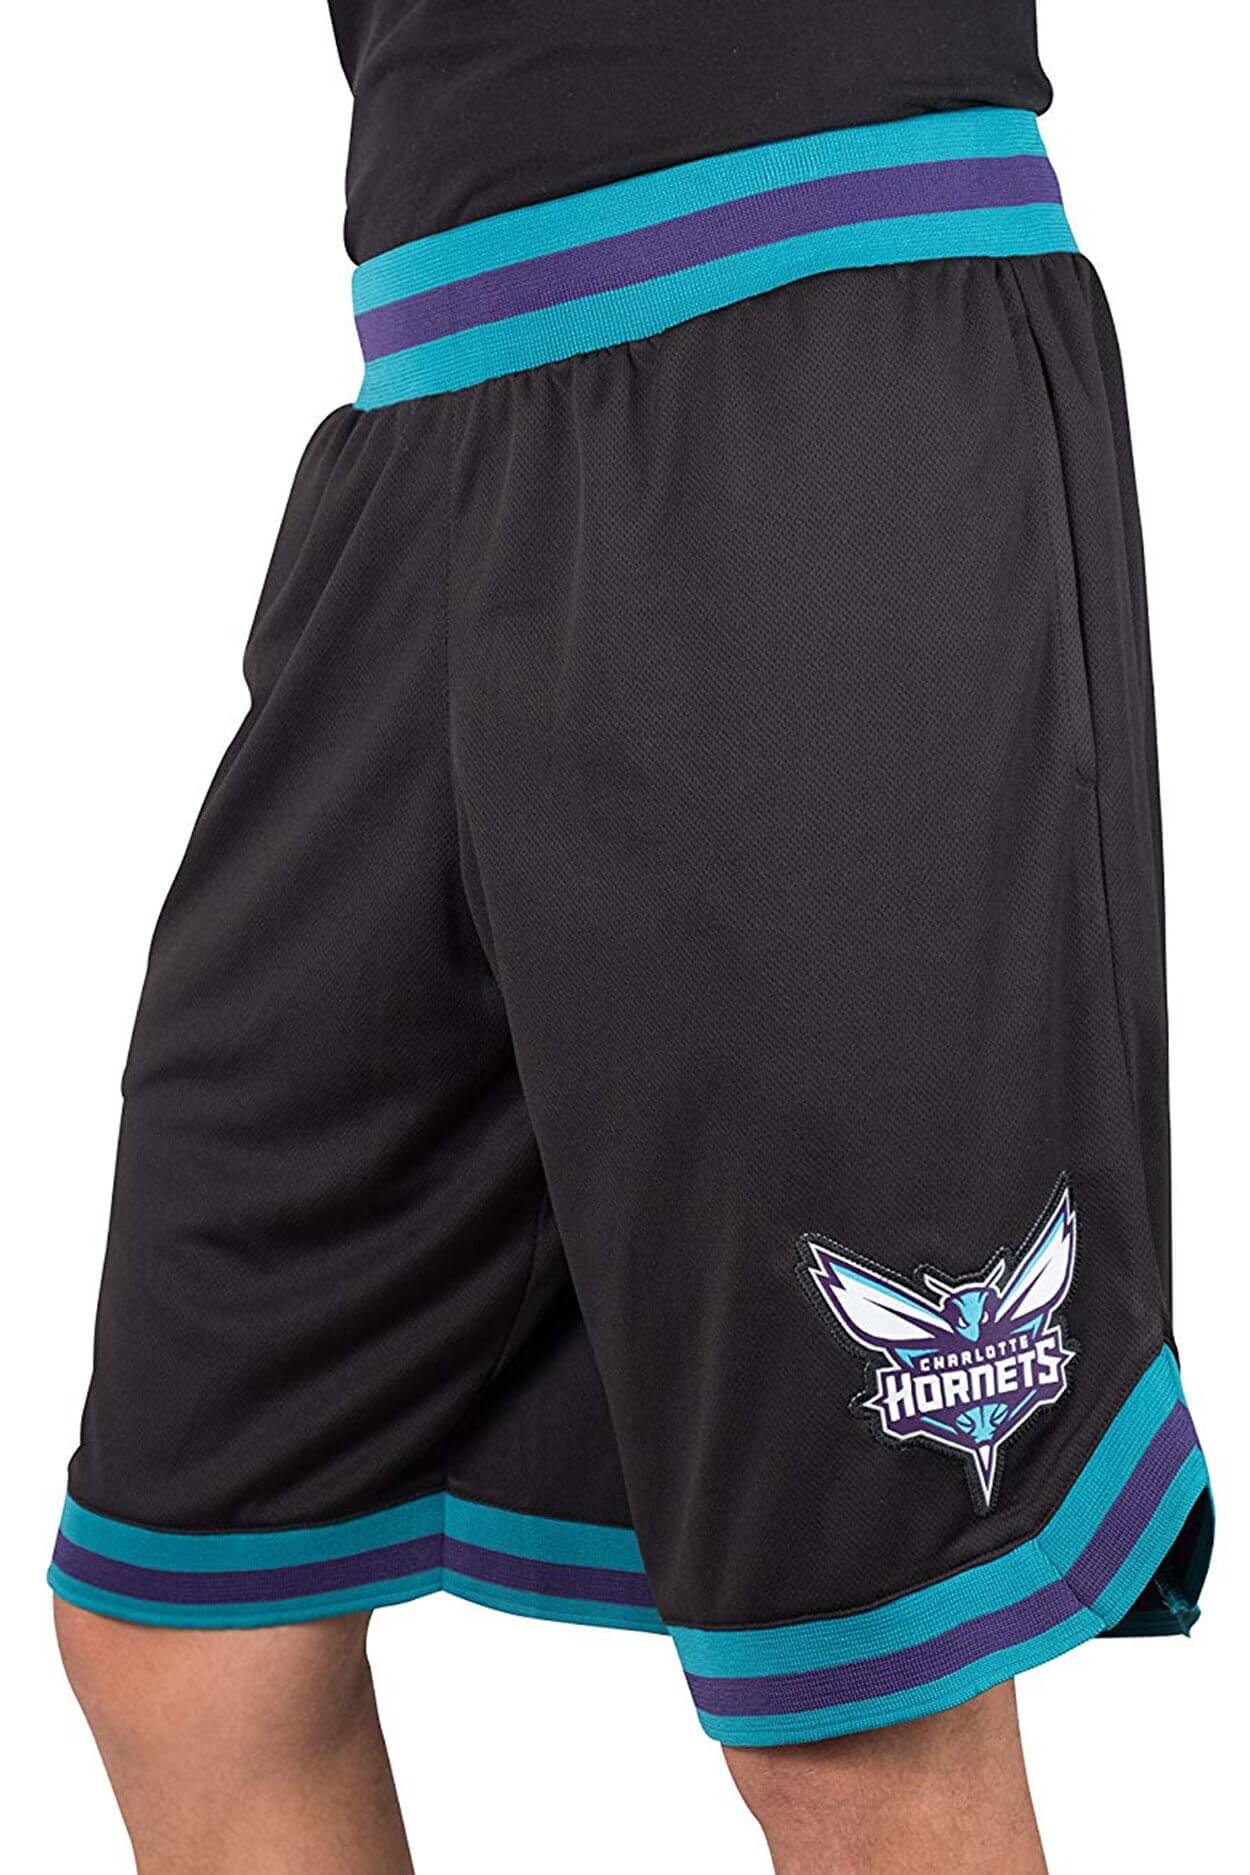 NBA Charlotte Hornets Men's Basketball Shorts|Charlotte Hornets